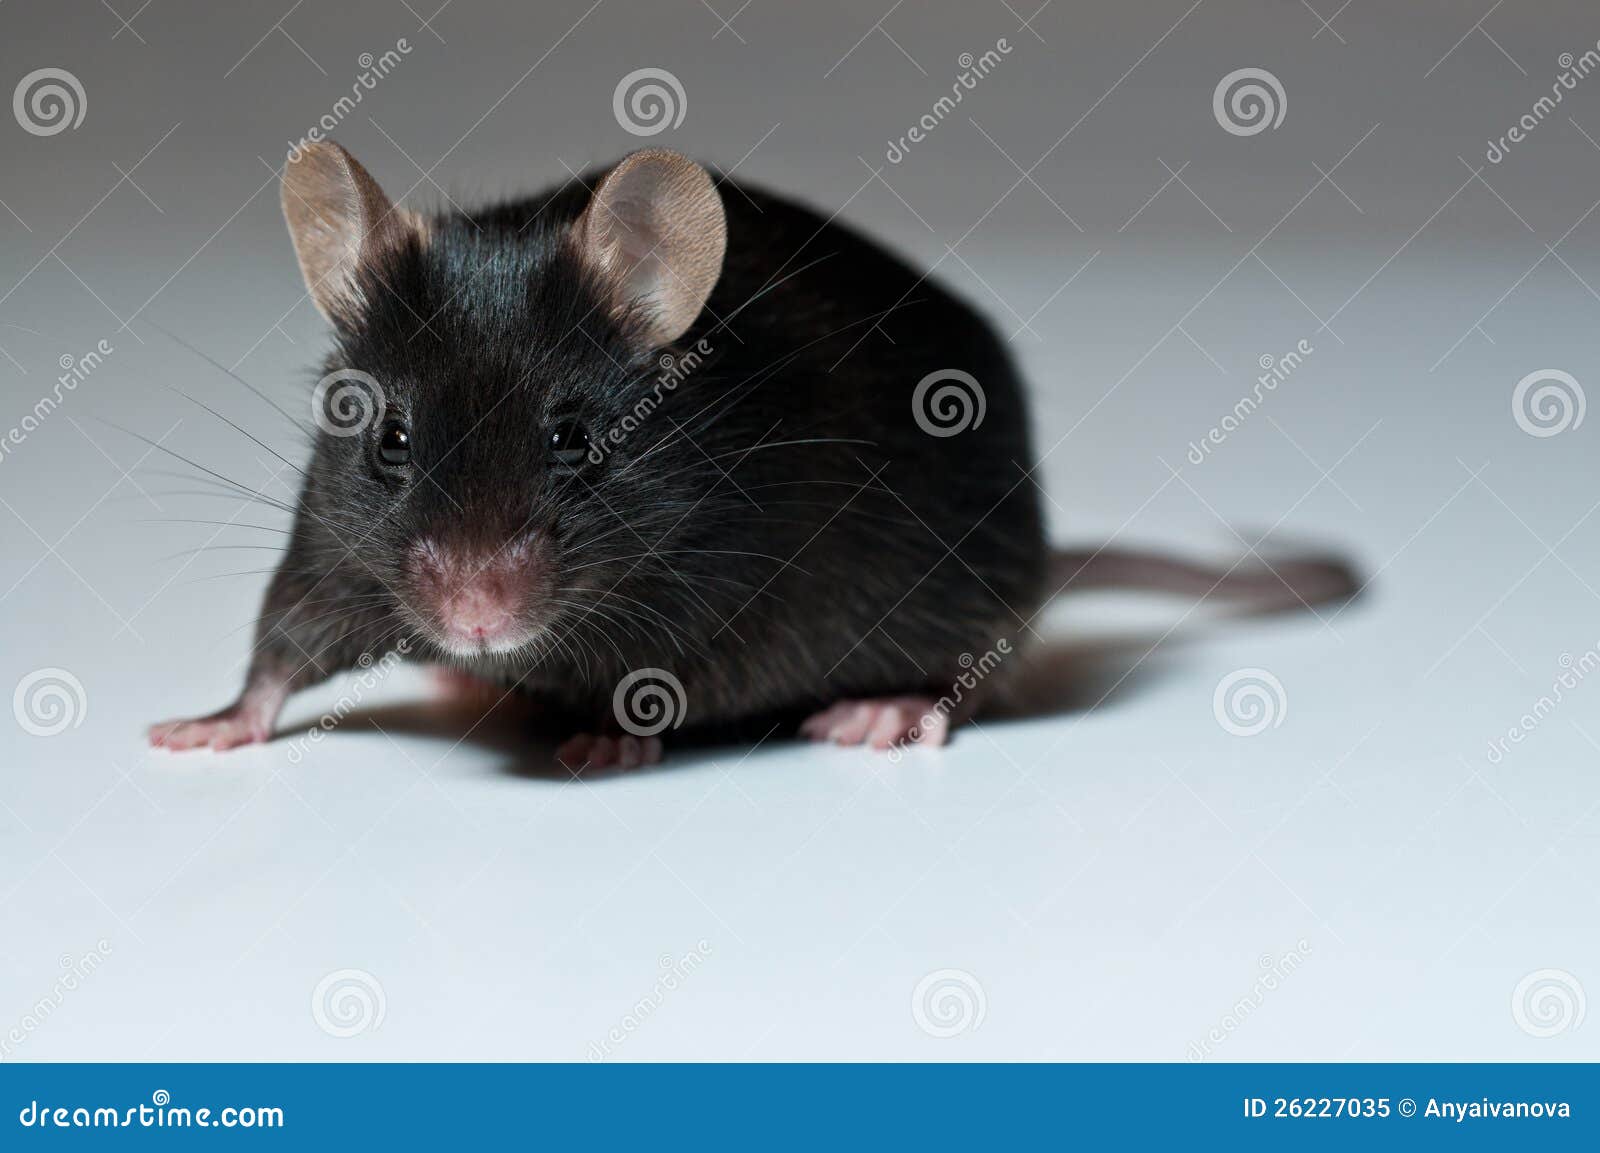 Weven Geboorteplaats microscoop Zwarte muis stock afbeelding. Image of wijfje, bont, test - 26227035